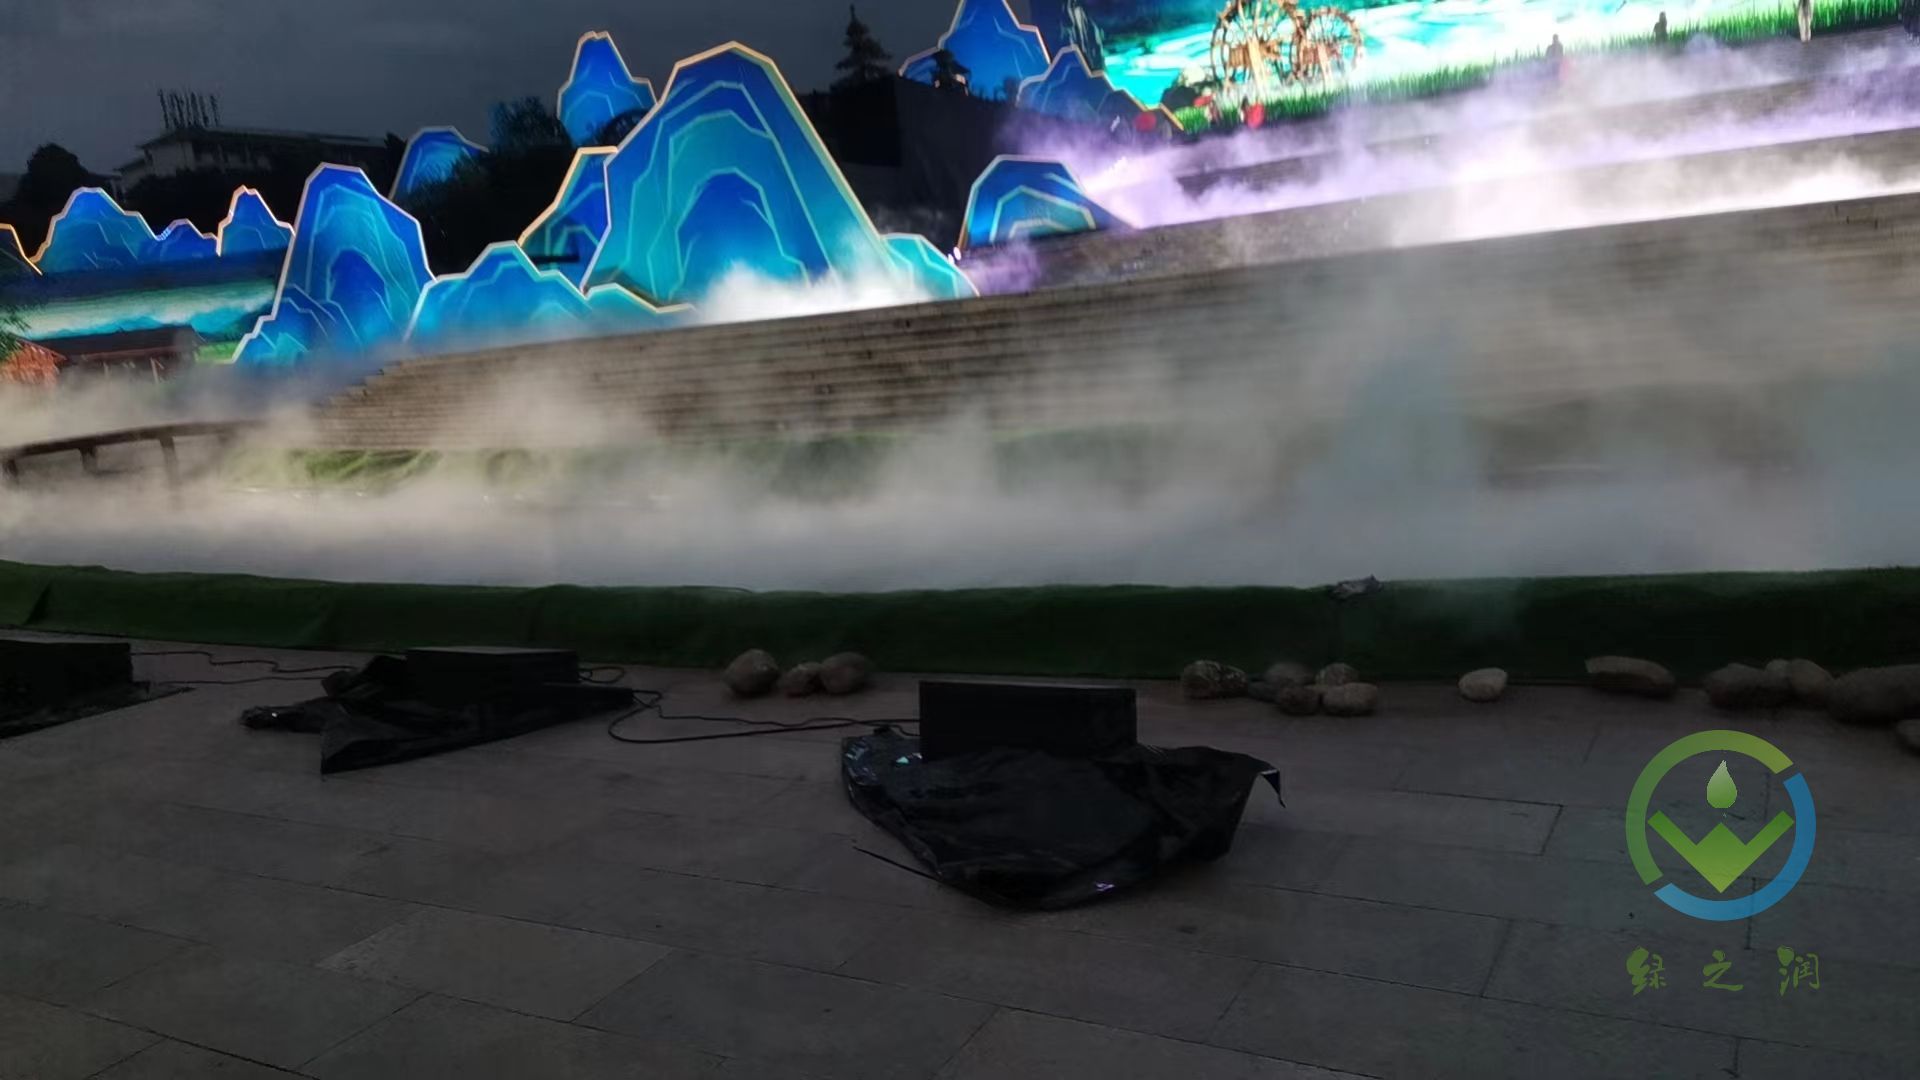 湖南株洲音乐广场景观喷雾系统安装完成